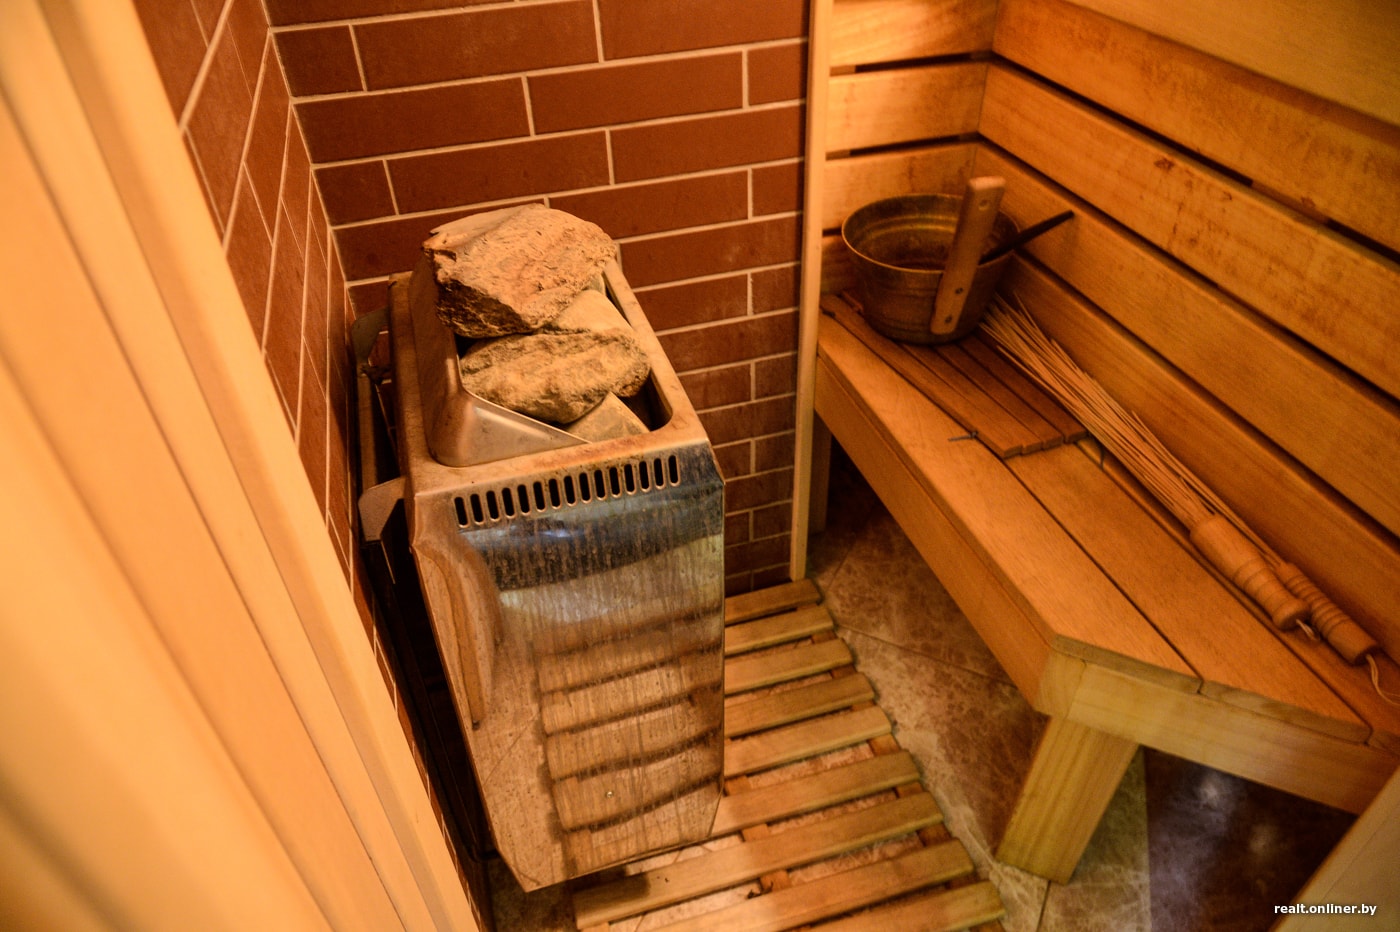 Парилка в квартире (35 фото): домашняя баня из бочки своими руками, как сделать мини-вариант в многоквартирном доме